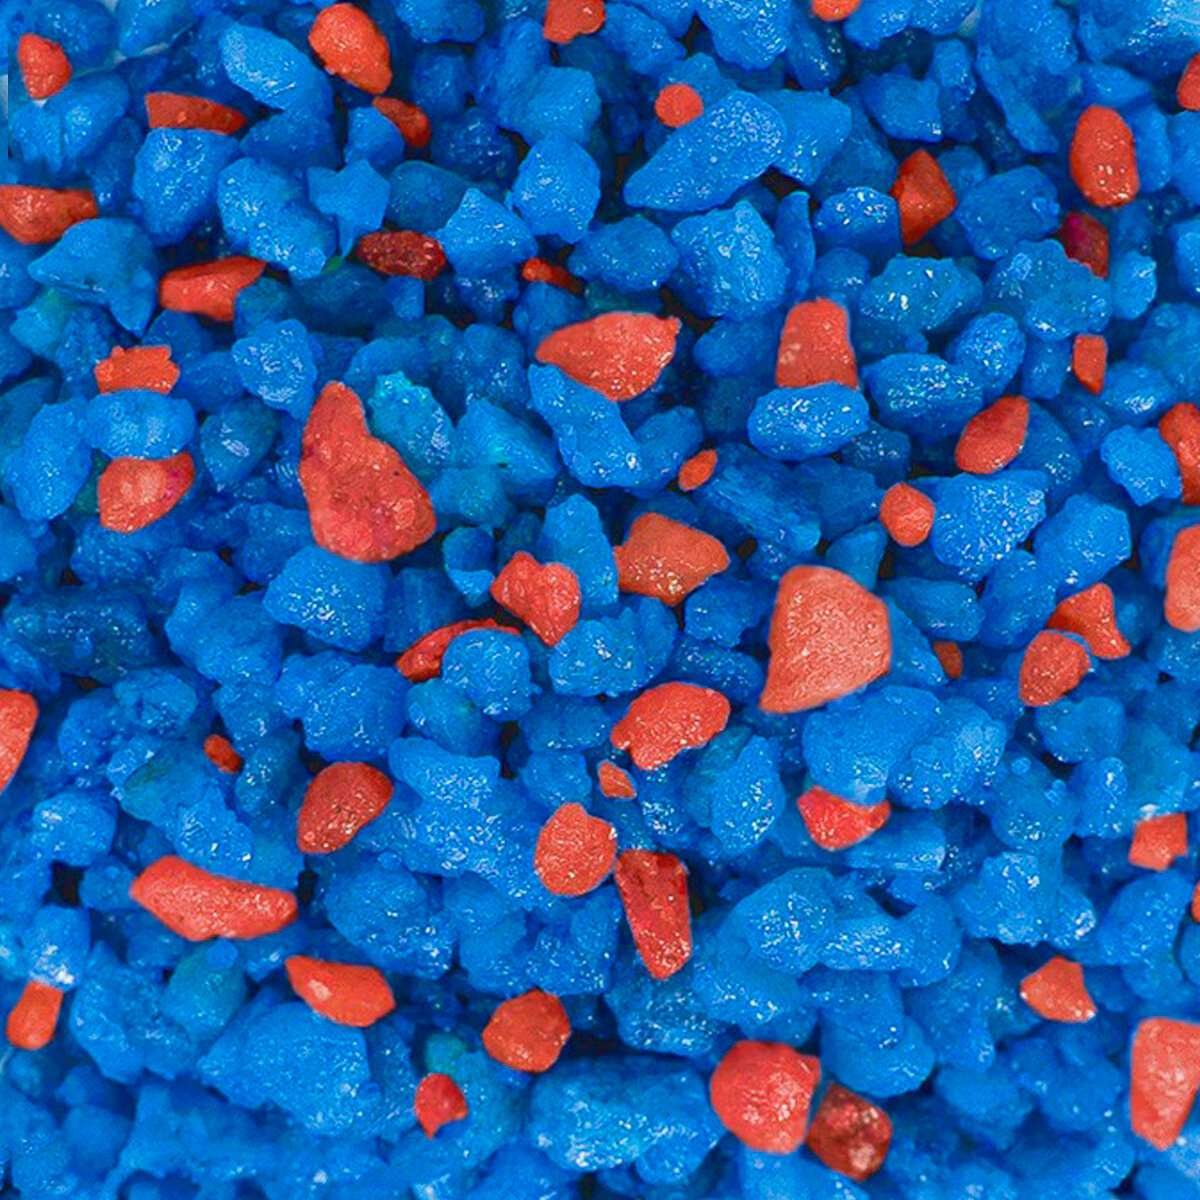 Натуральный грунт для кактусов, суккулентов и растений, Zoo One, природный материал, "Синий+бордо", (фракция 2-5 мм), 1 кг, 15-0005